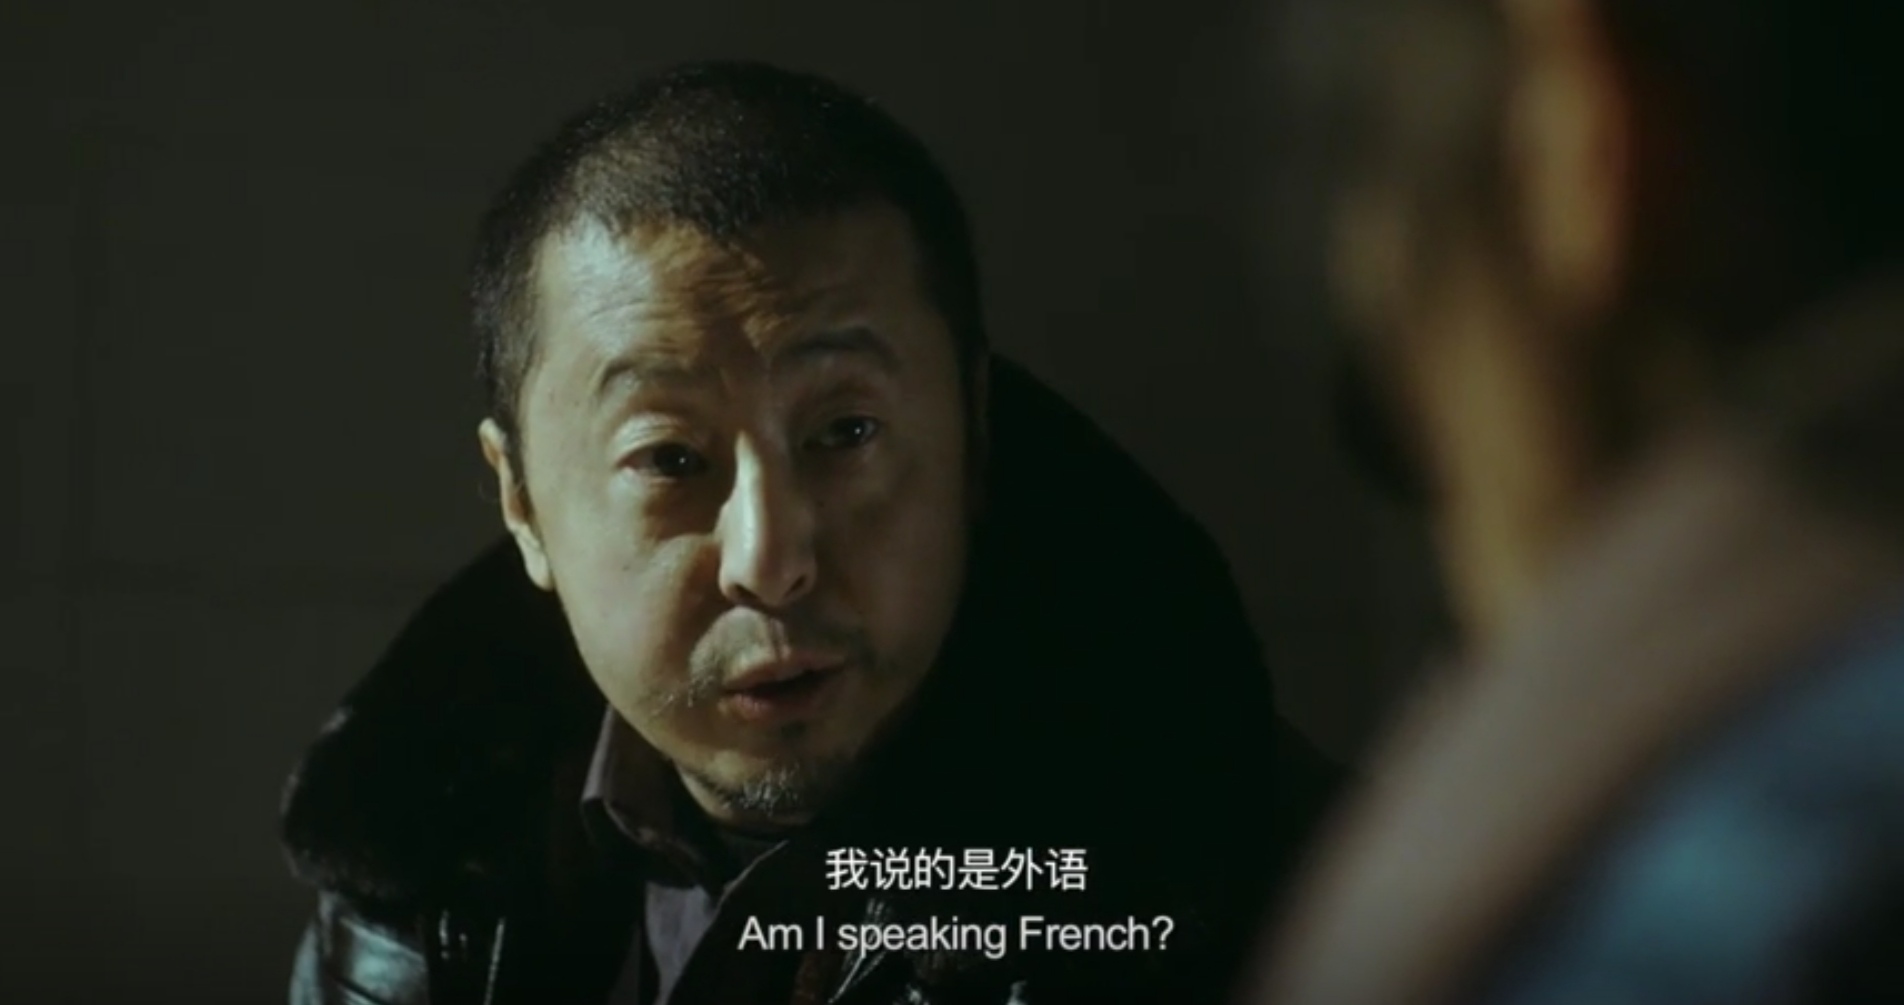 《不止不休》：给沉默的现实一记重拳，它能成为华语爆款电影吗？